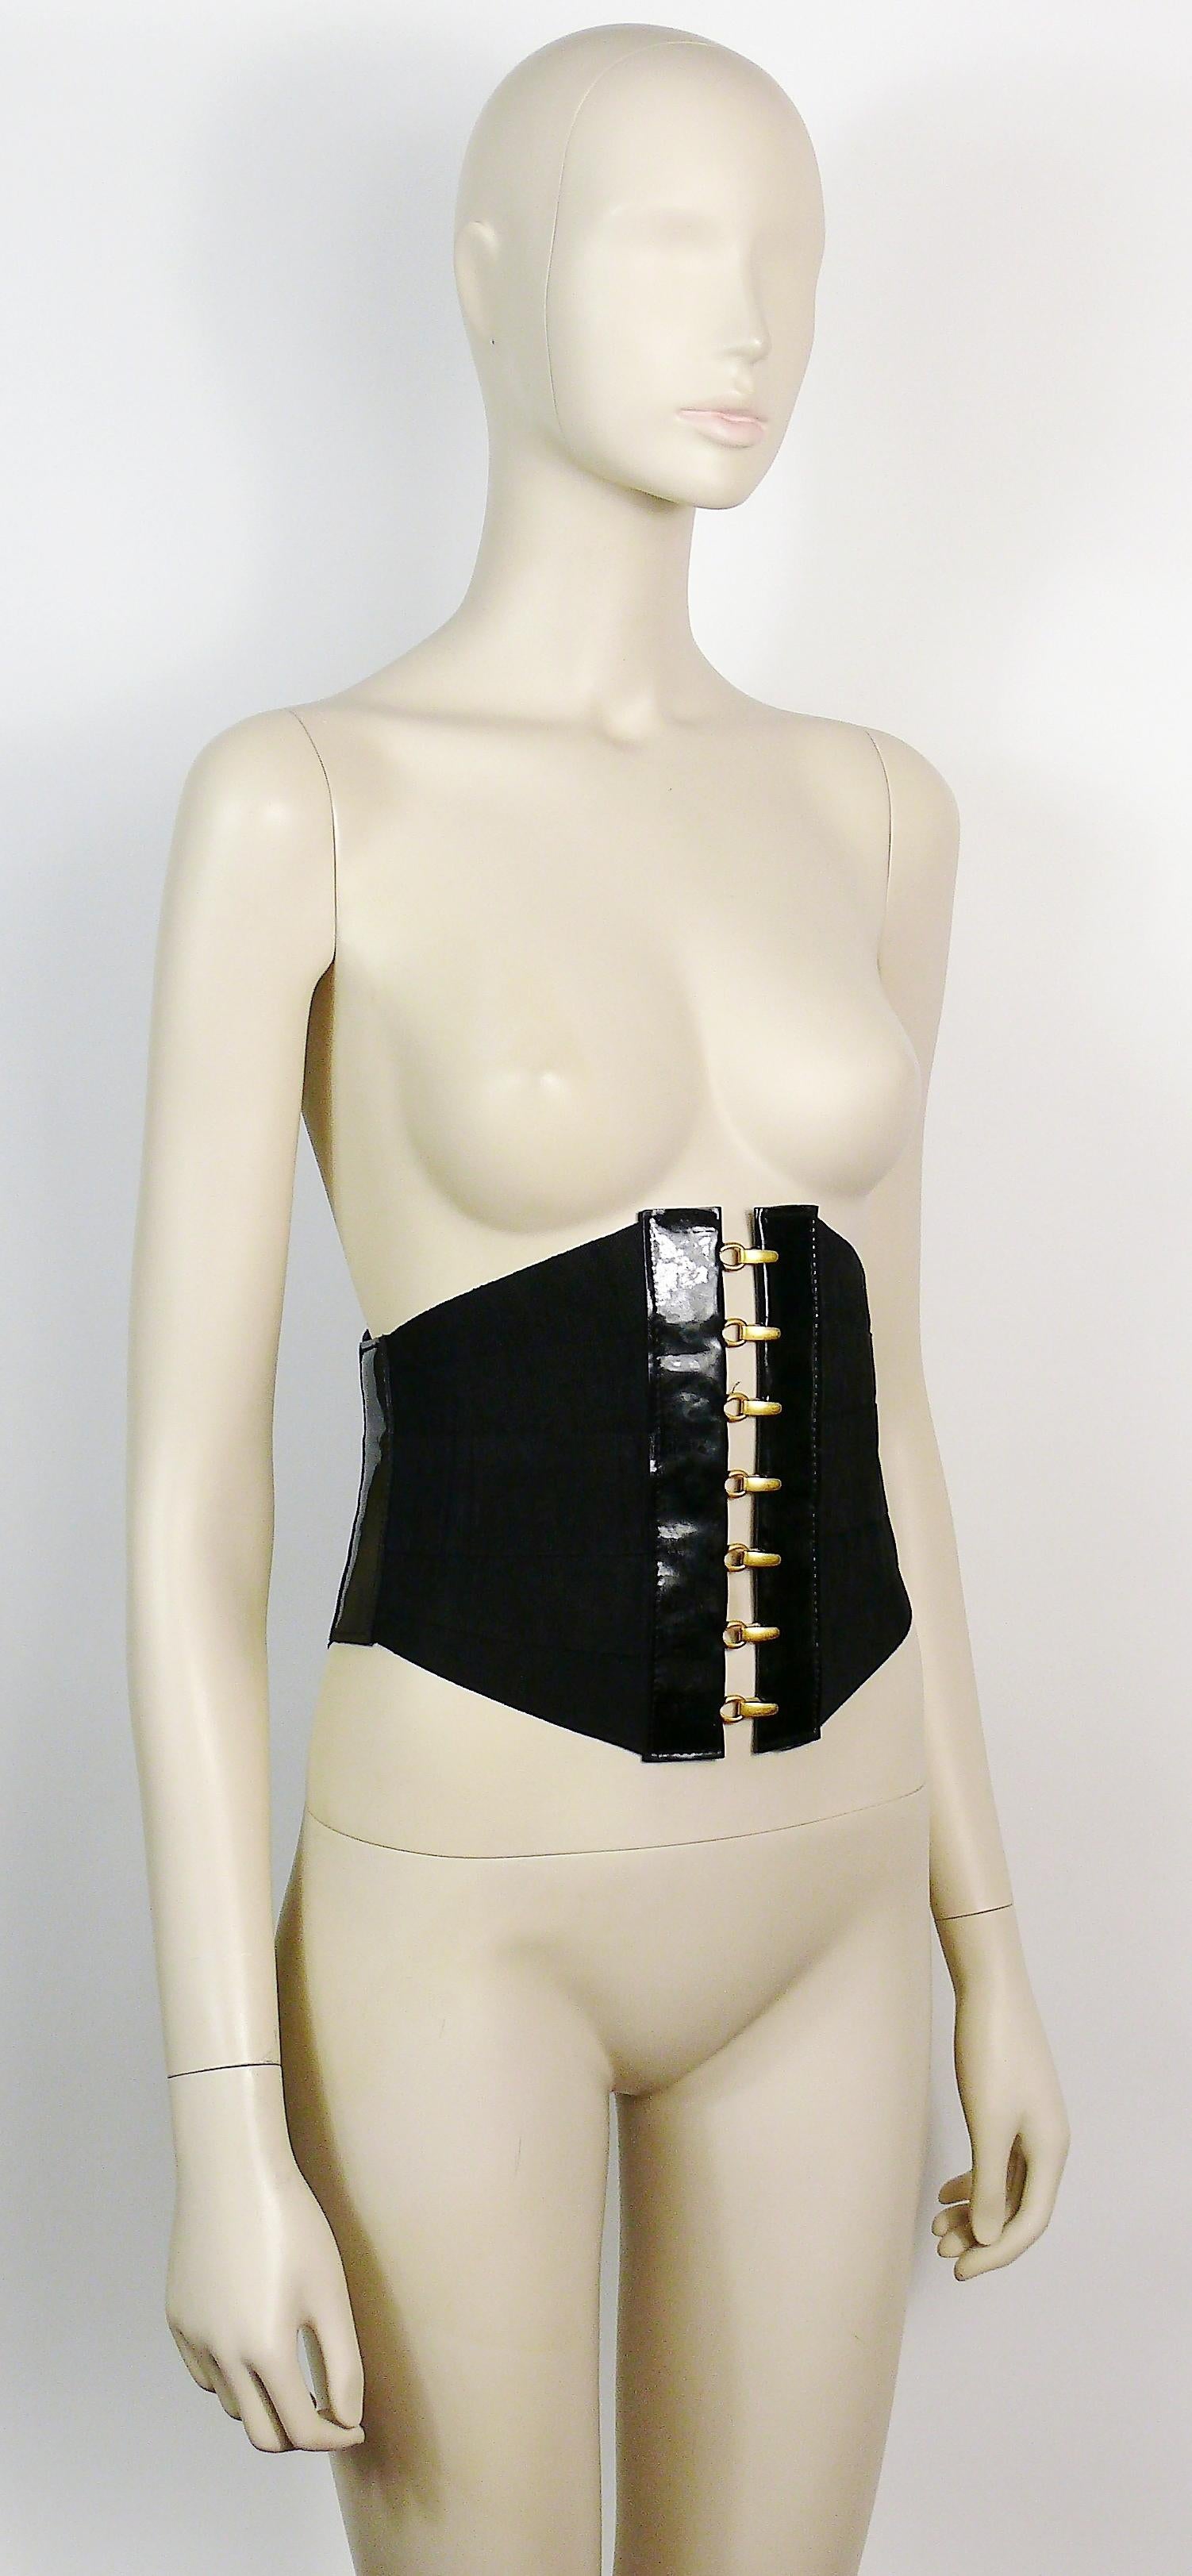 Schwarzer Bandage-Korsettgürtel im Vintage-Stil aus Ripsband, Lacklederdetails und goldfarbener Hardware.

Haken- und Ösenverschluss vorne.
Schnürsenkel auf dem Rücken.
Piercing Ring Detail auf der linken Seite.

Keine